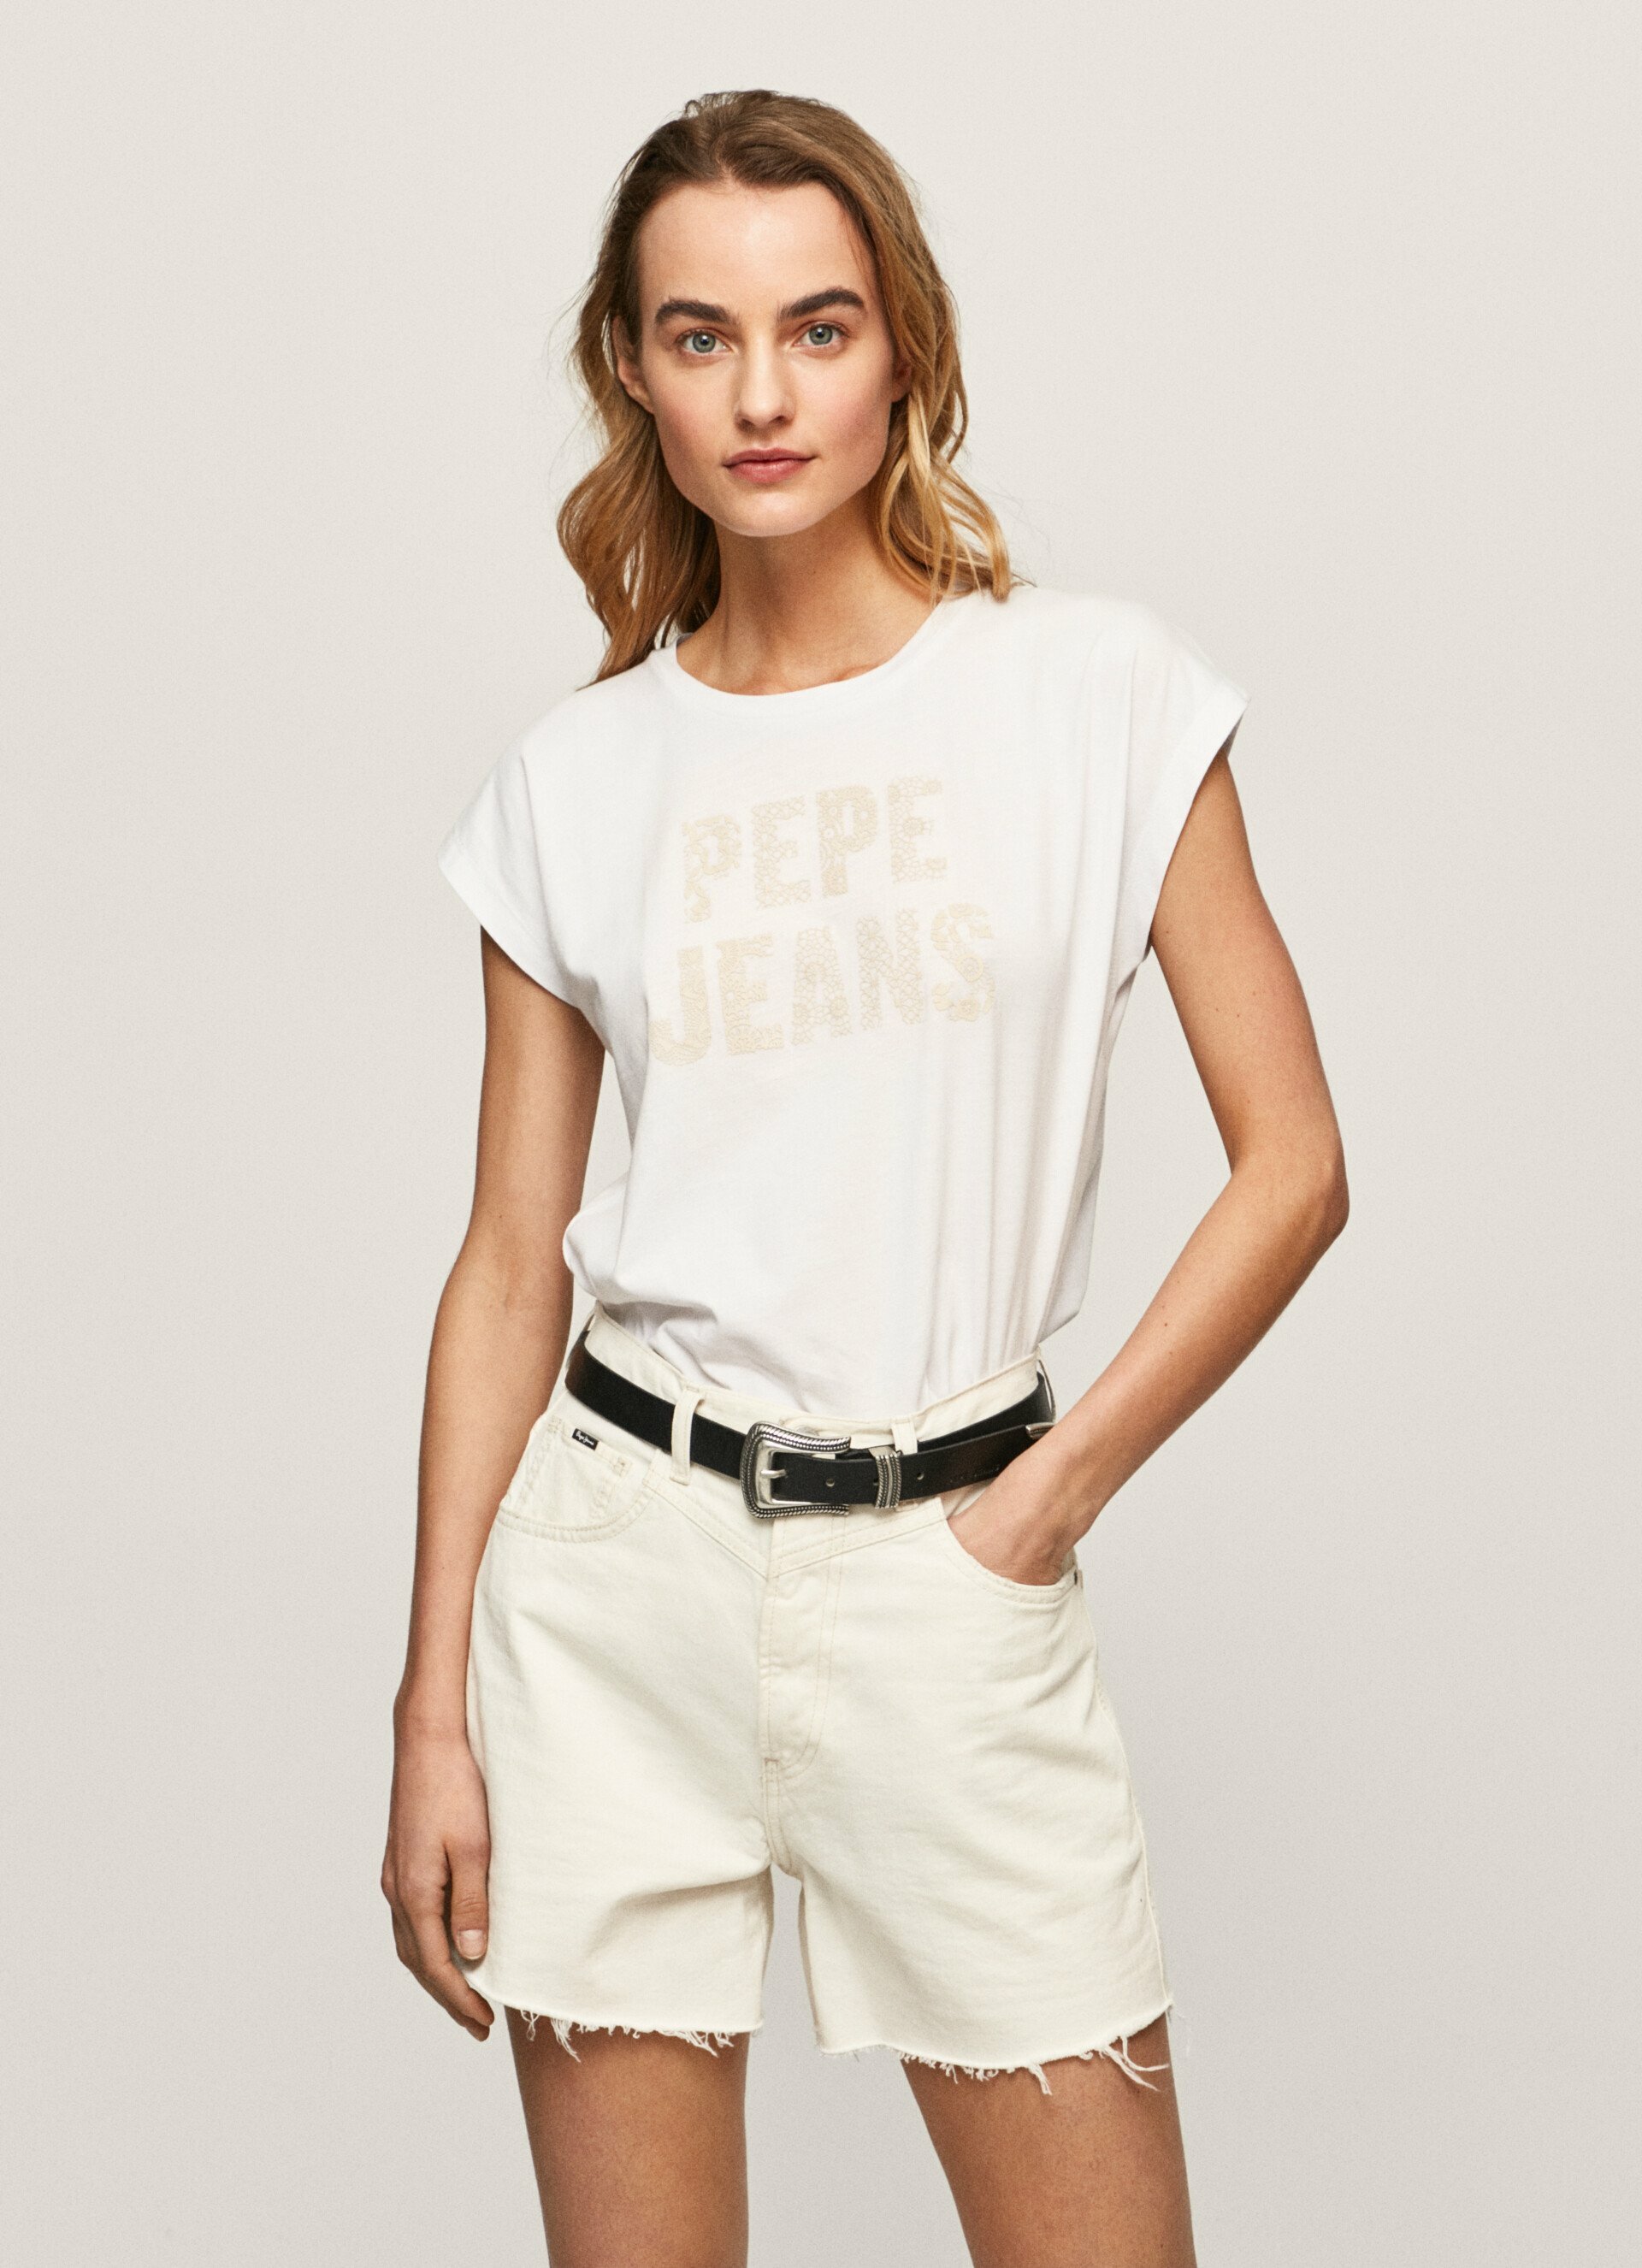 Pepe Jeans dámské bílé triko OLA s potiskem - L (800)